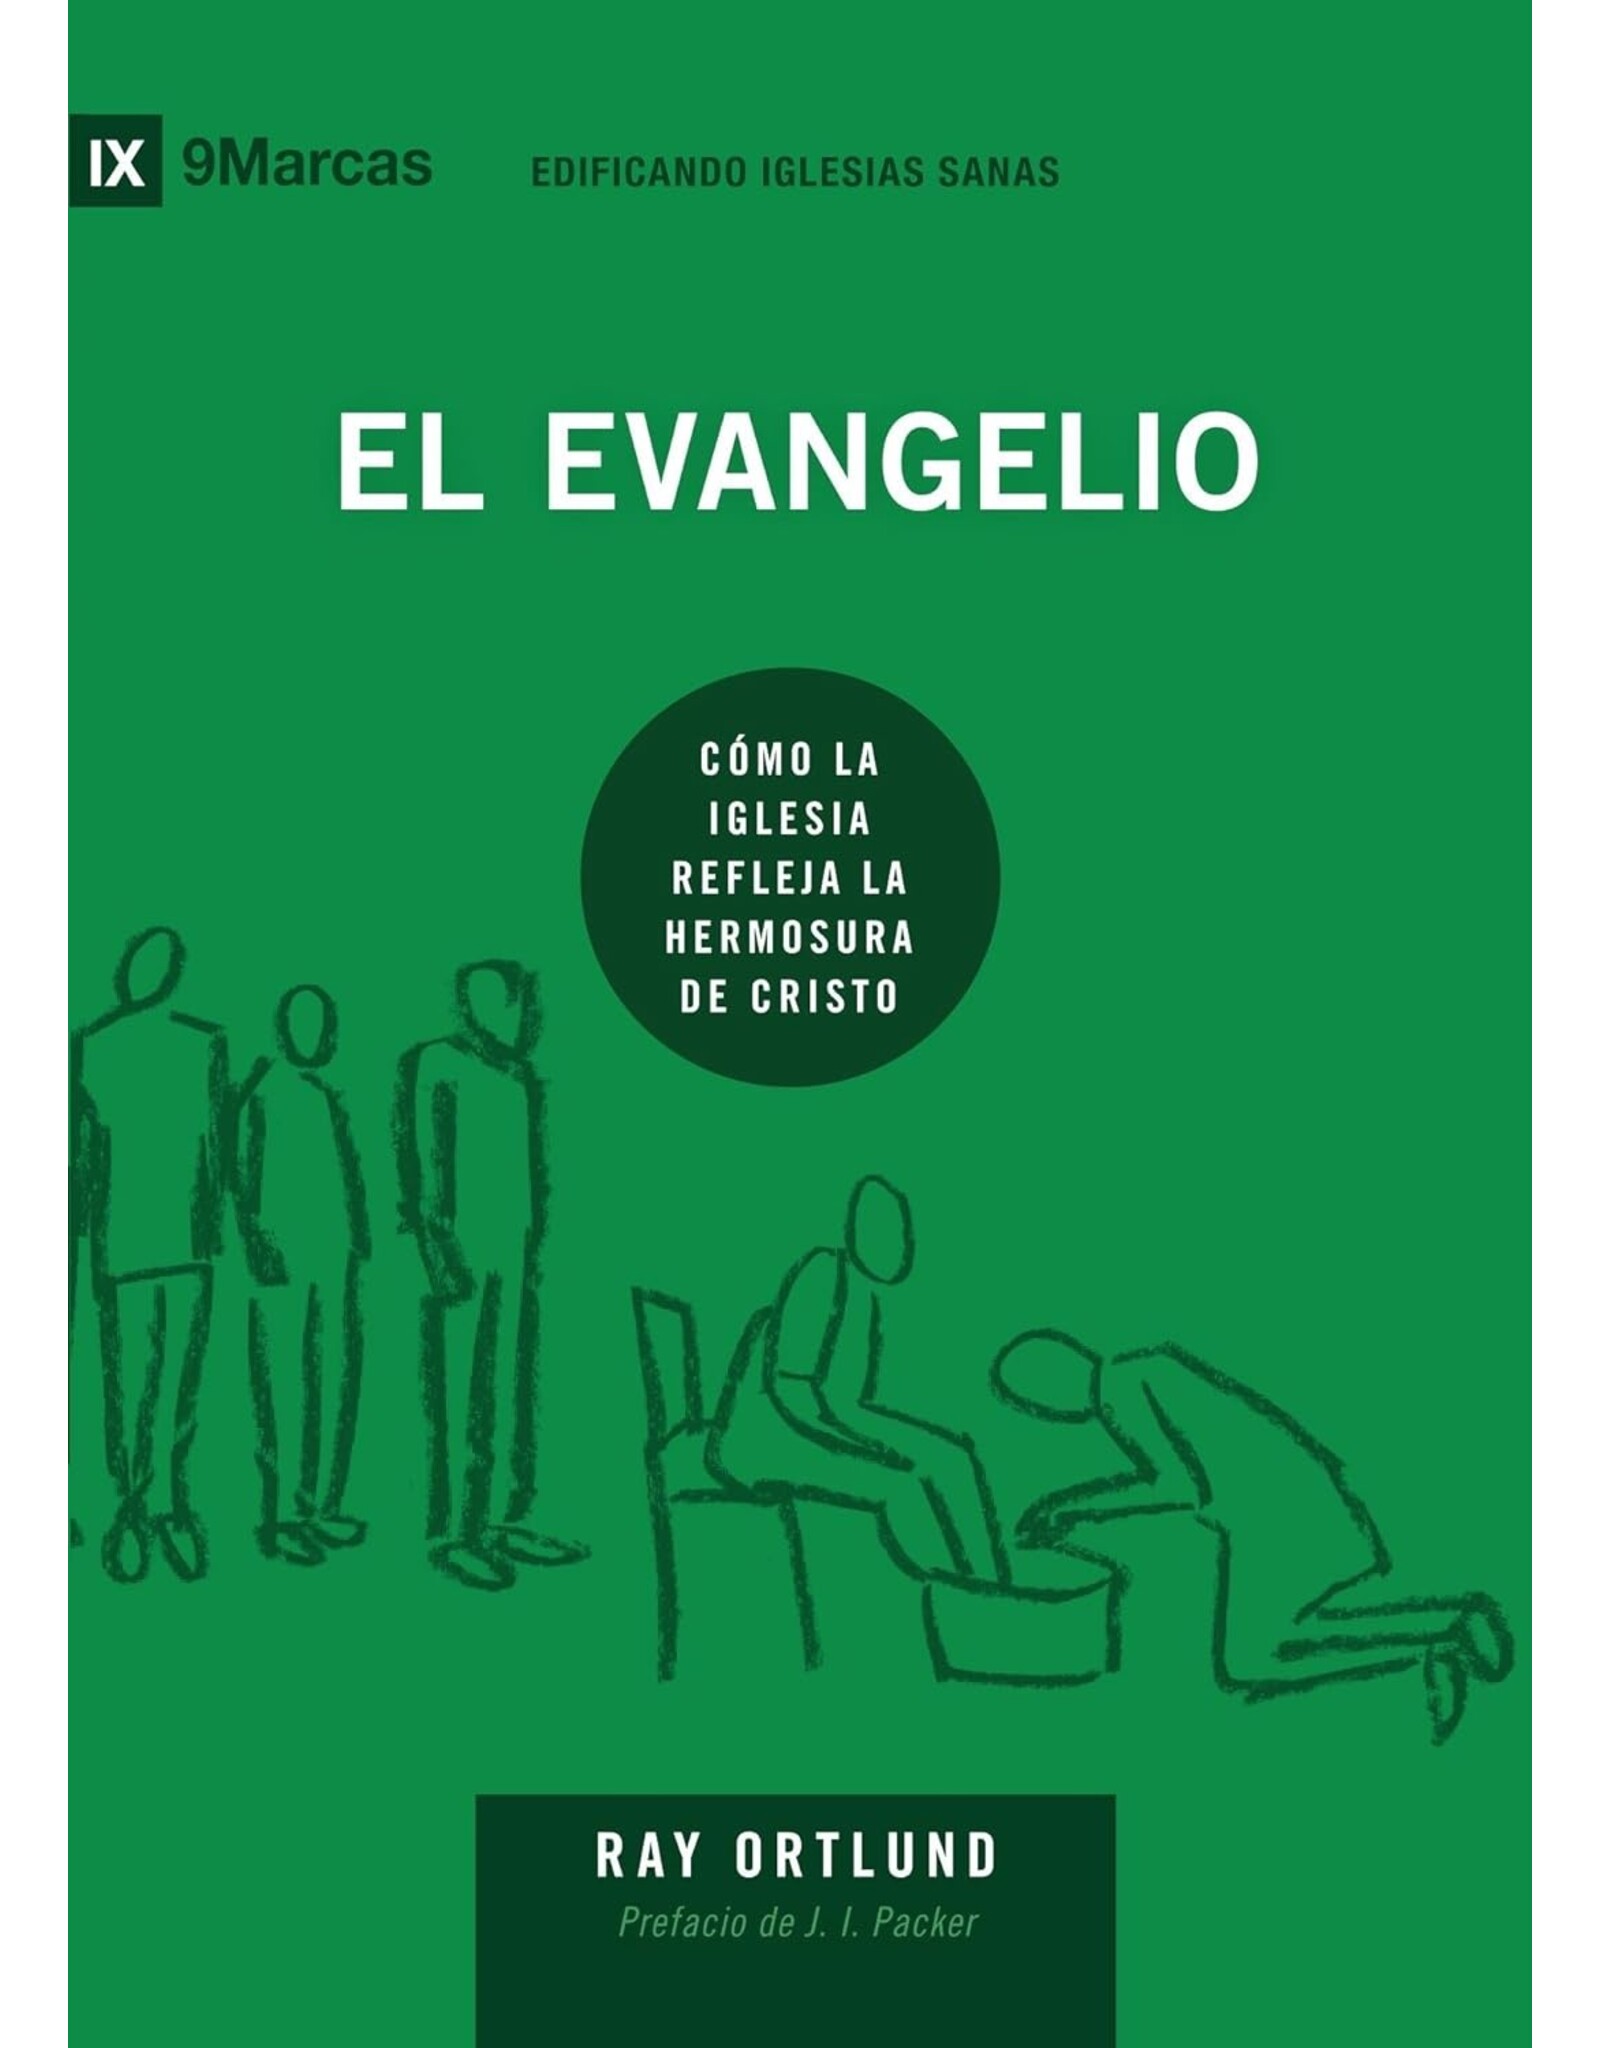 Poiema El Evangelio (The Gospel - Spanish)